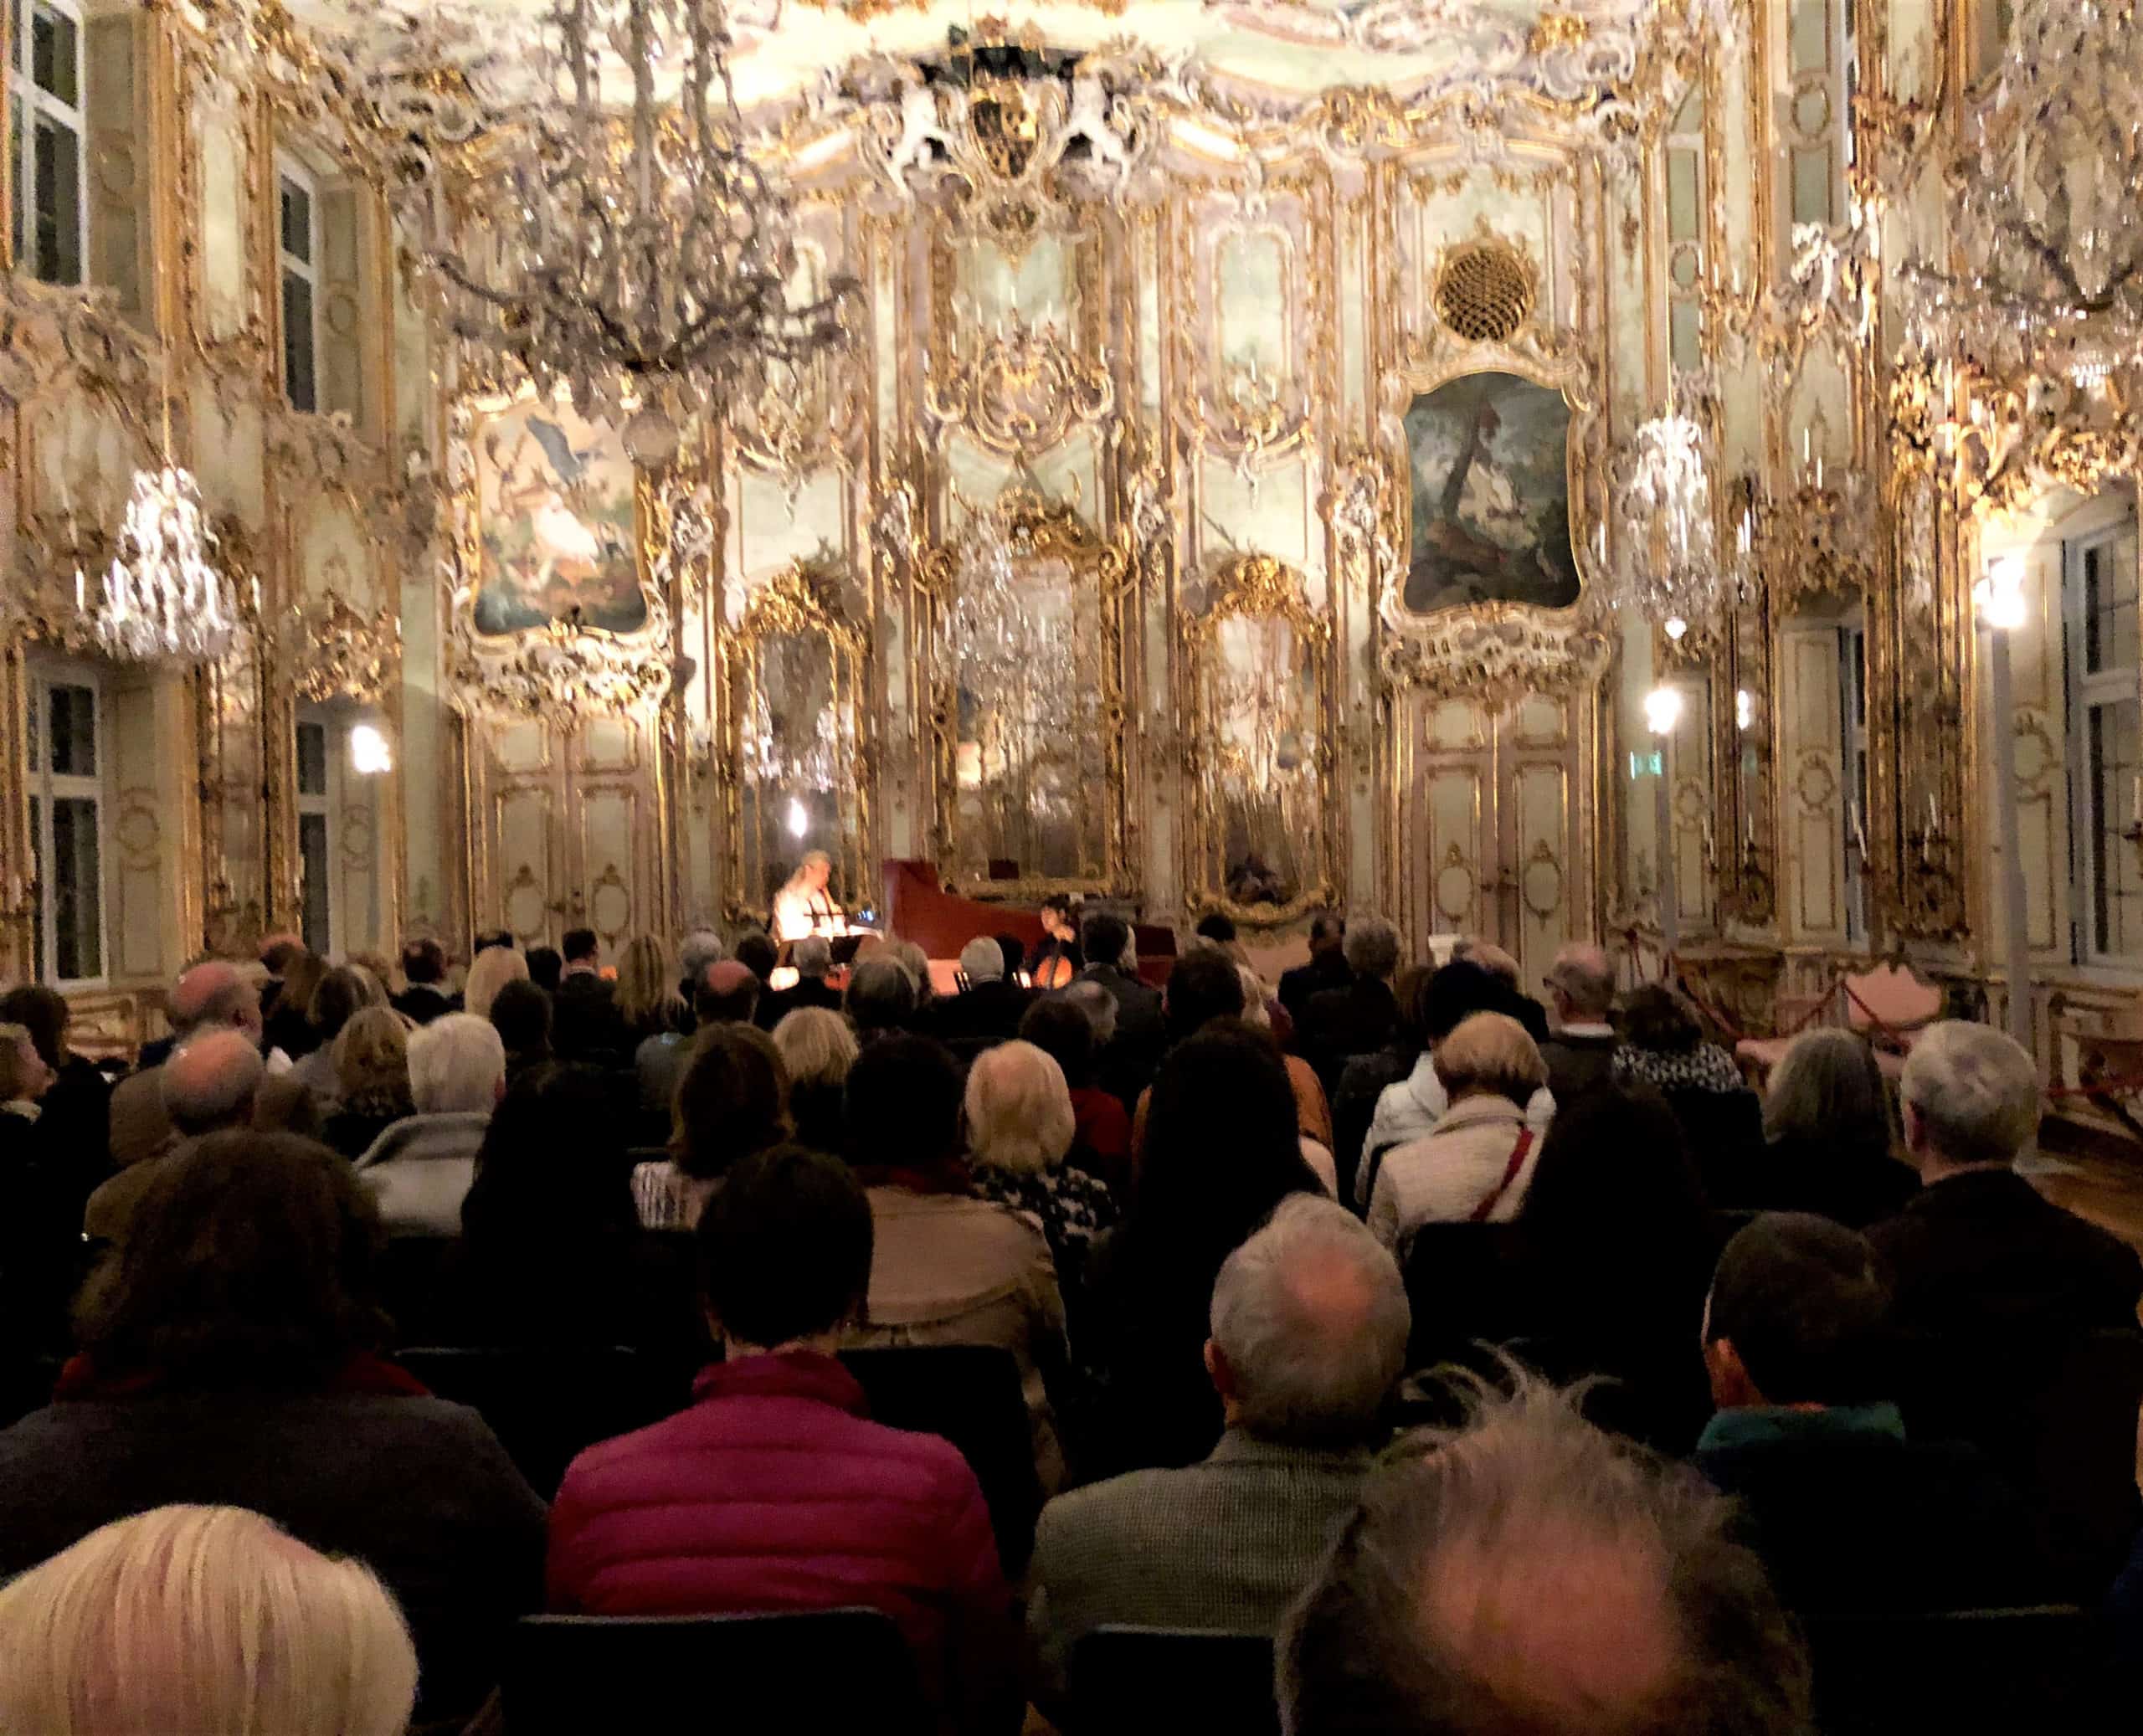 Schaezlerpalais Ballroom Baroque Concert